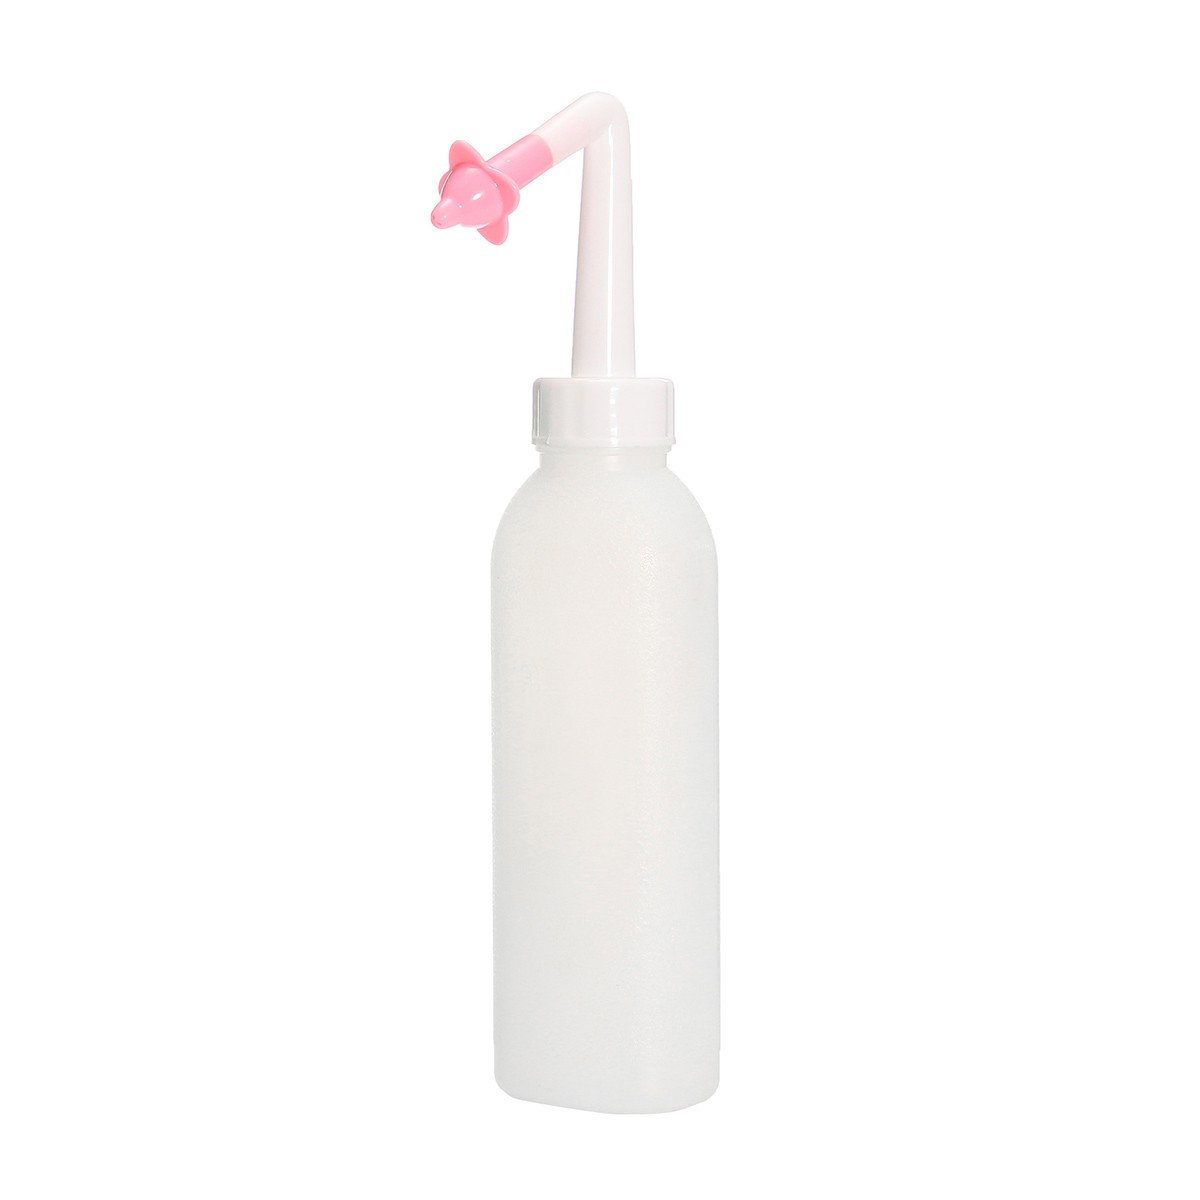 400ml-Yoga-Nasal-Wash-Neti-Bottle-Nose-Clean-Aspirator-Sinus-Irrigation-1108016